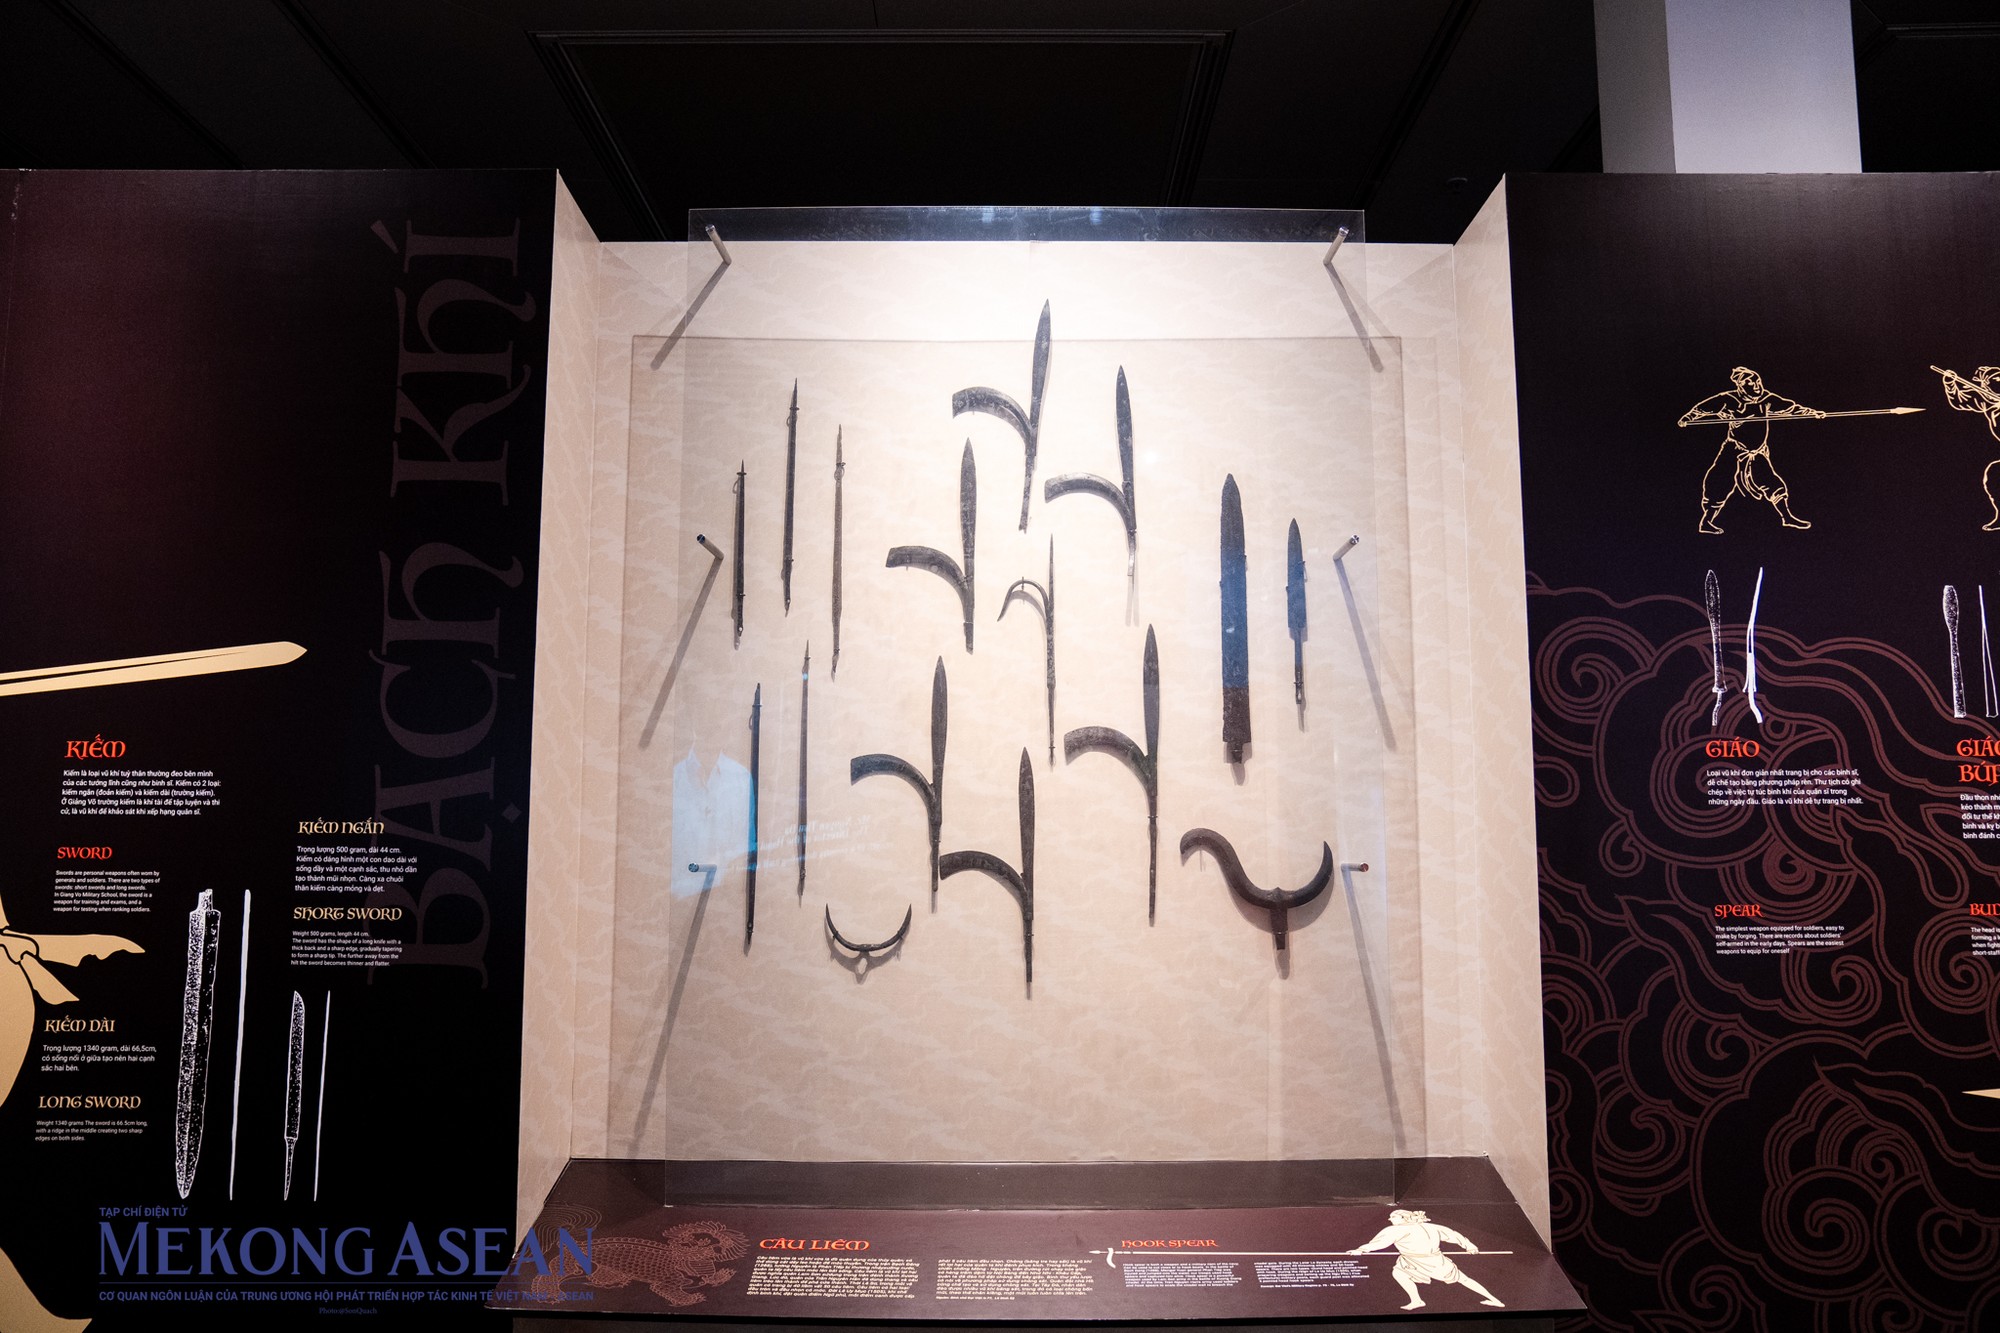 Các mẫu vật vũ khí câu liêm được trưng bày trong triển lãm. ảnh 10